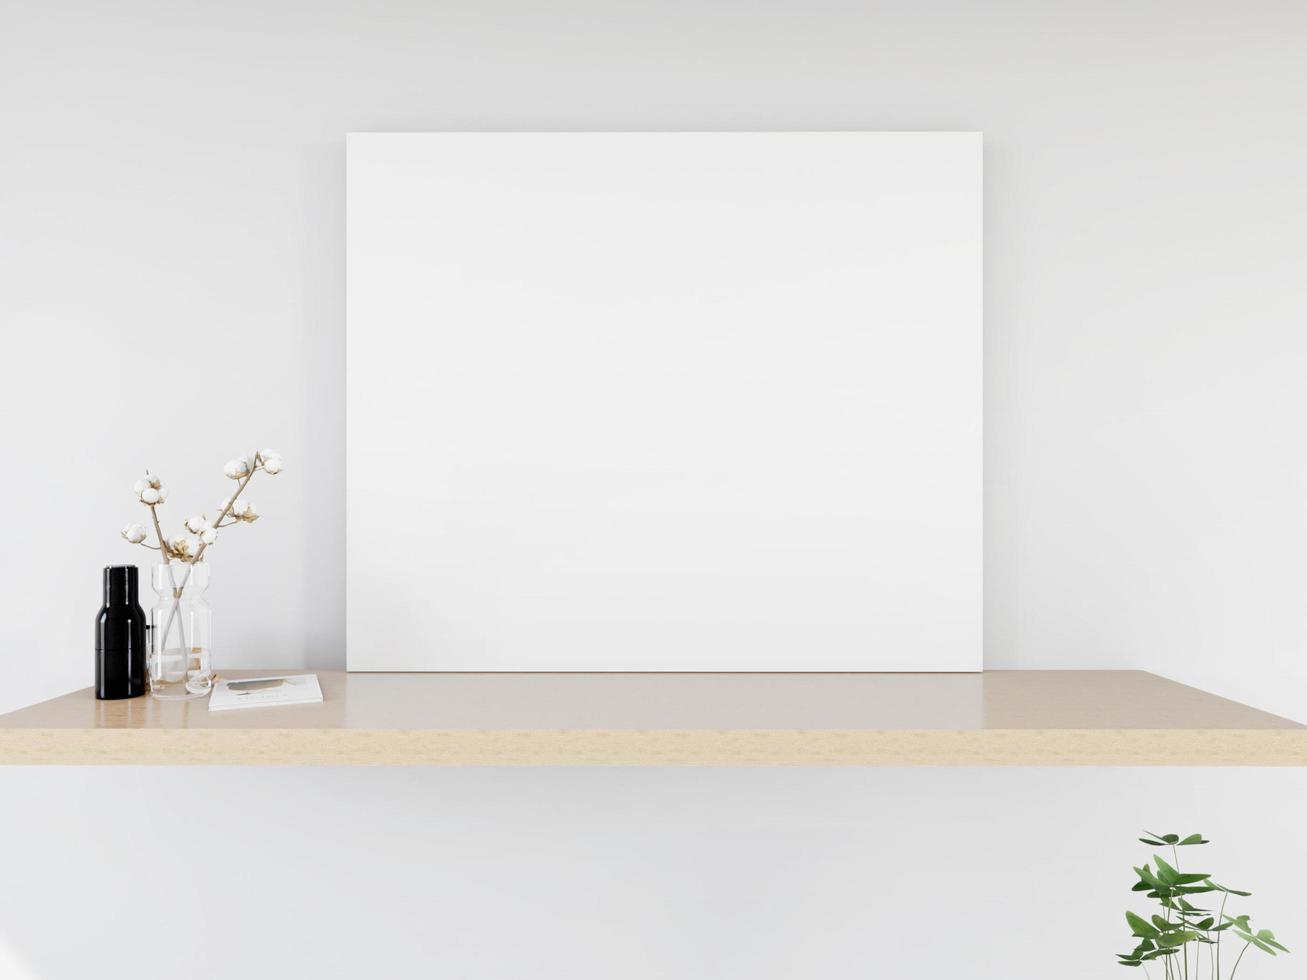 mock up de moldura de cartaz no interior moderno de piso de madeira na sala de estar com algumas árvores isoladas na luz de fundo, renderização 3d, ilustração 3d foto